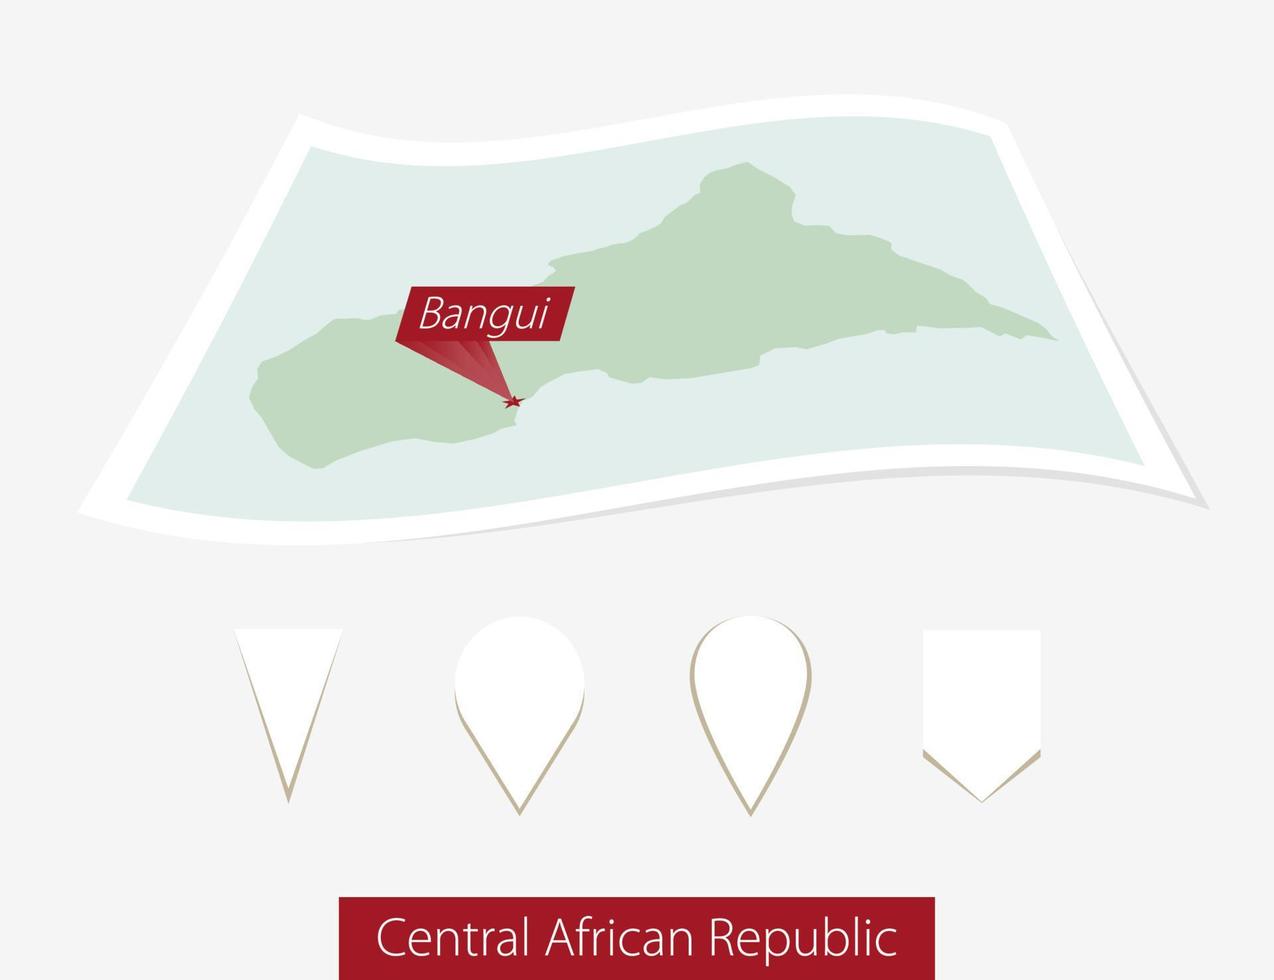 gebogen Papier Karte von zentral afrikanisch Republik mit Hauptstadt bangui auf grau Hintergrund. vier anders Karte Stift Satz. vektor